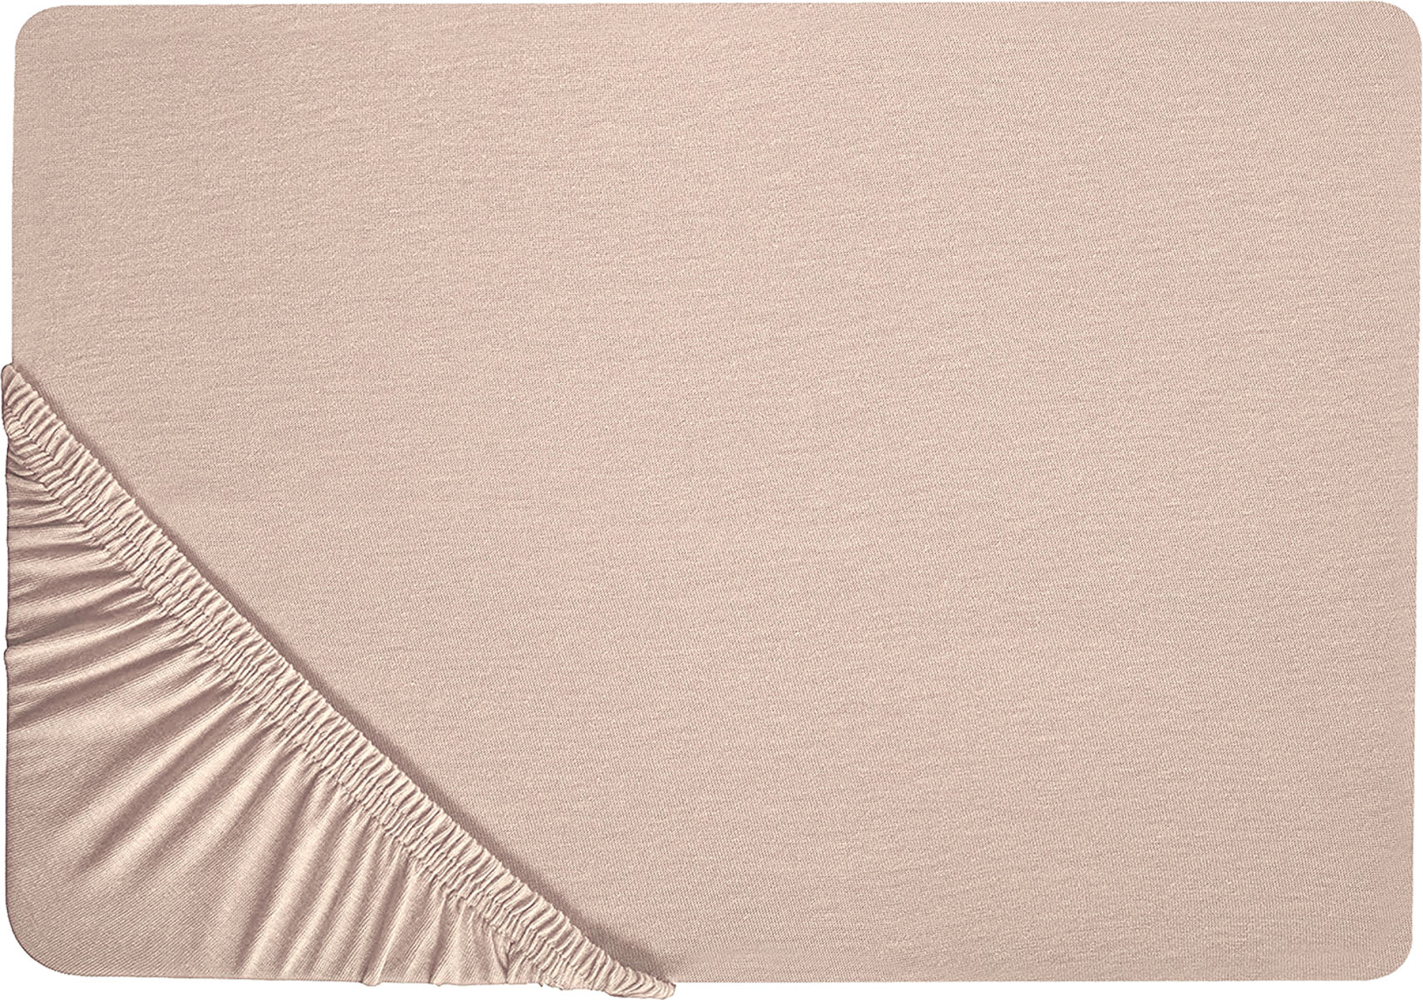 Spannbettlaken 'Hofuf' Beige Baumwolle mit Gummizug 200 x 200 cm groß Betttuch für Klassische Hohe Matratze Atmungsaktiv Schlafzimmer Doppelbett Bild 1